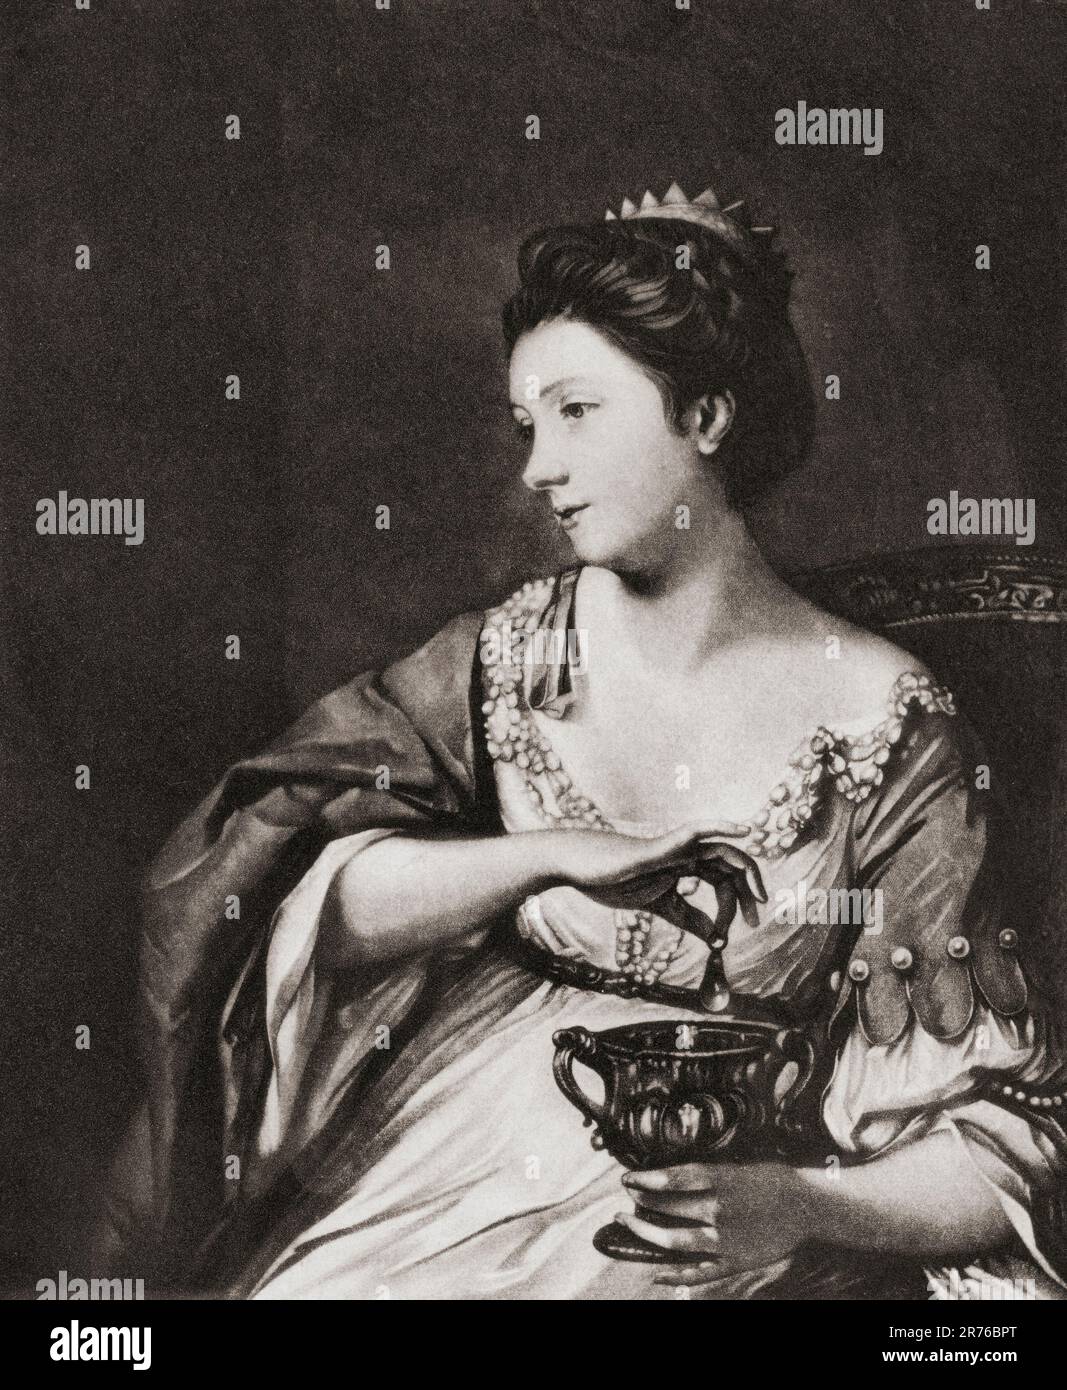 Catherine Maria Fischer, 1741–1767, alias Kitty Fisher. Prominenter britischer Kurtisane. Nach dem Porträt von Joshua Reynolds, Cleopatra löst die Perle auf. Von Mezzotints, veröffentlicht 1904. Stockfoto